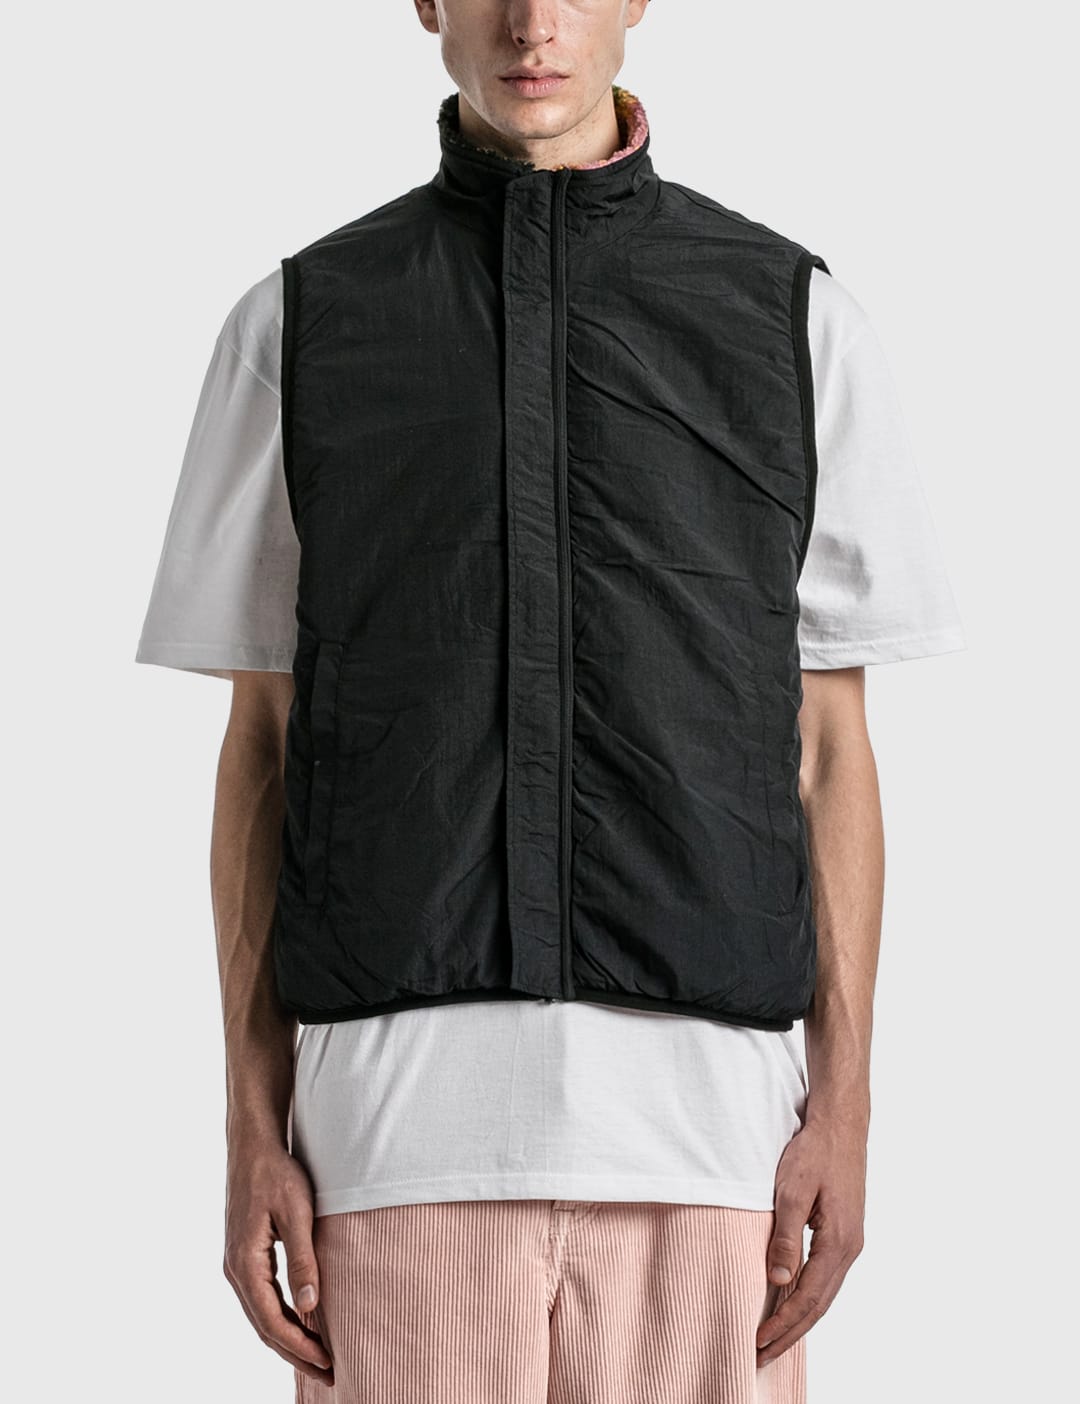 Stüssy - Jaquard Dye Sherpa Vest | HBX - Globally Curated Fashion